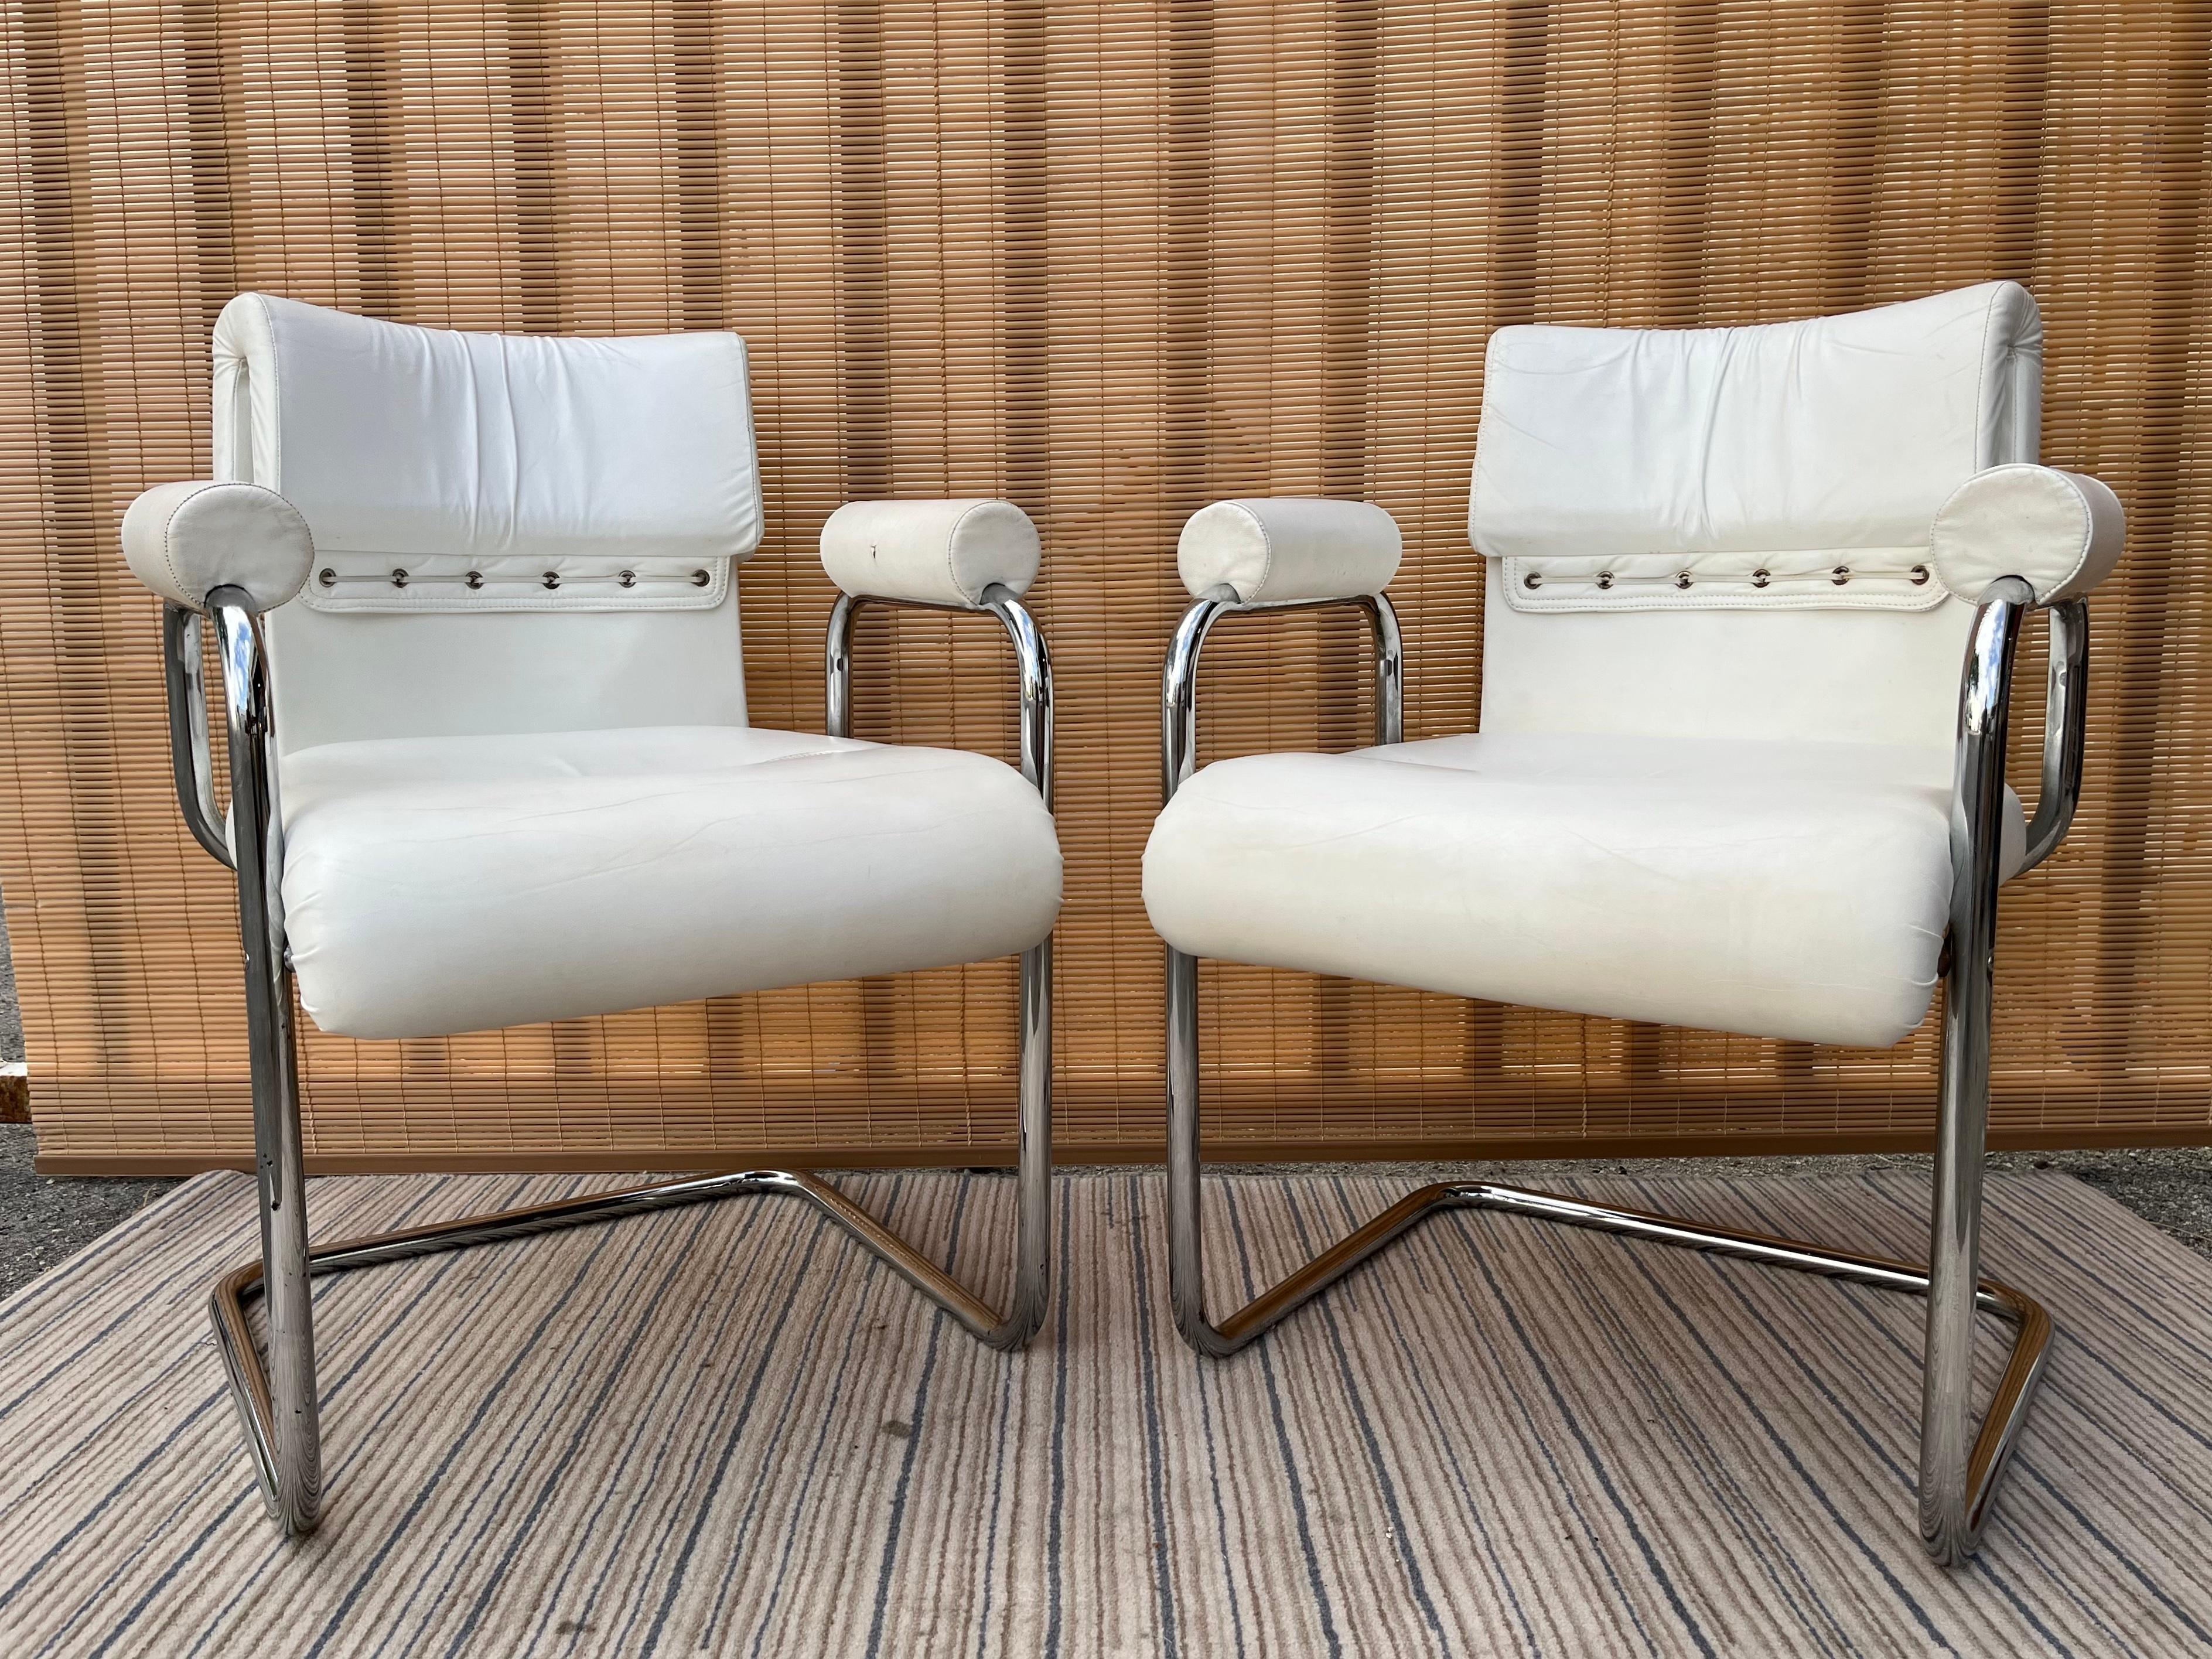 Une paire d'iconiques fauteuils de salle à manger Teorema, de style moderne du milieu du siècle, conçus par Guido Faleschini et fabriqués exclusivement par i4Mariani pour la collection Pace. Circa 1970 
Les fauteuils présentent un design cantilever